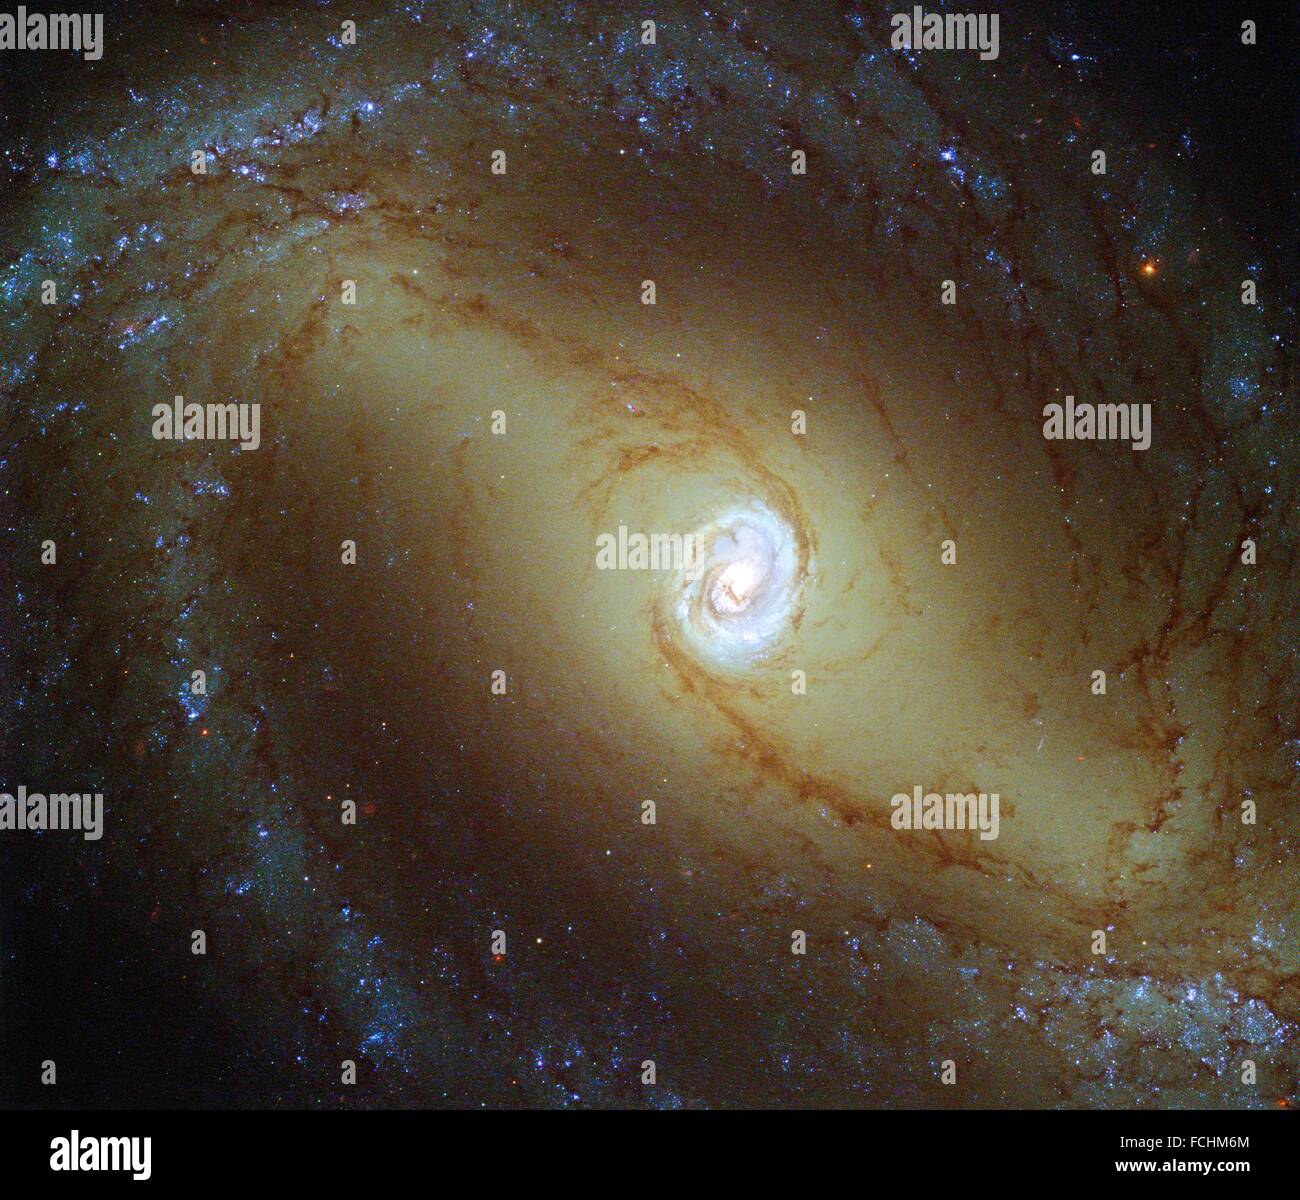 Diese Ansicht, aufgenommen von der NASA/ESA Hubble Space Telescope, zeigt eine nahegelegene Spiralgalaxie bekannt als NGC 1433. Bei etwa 32 Millionen Stockfoto